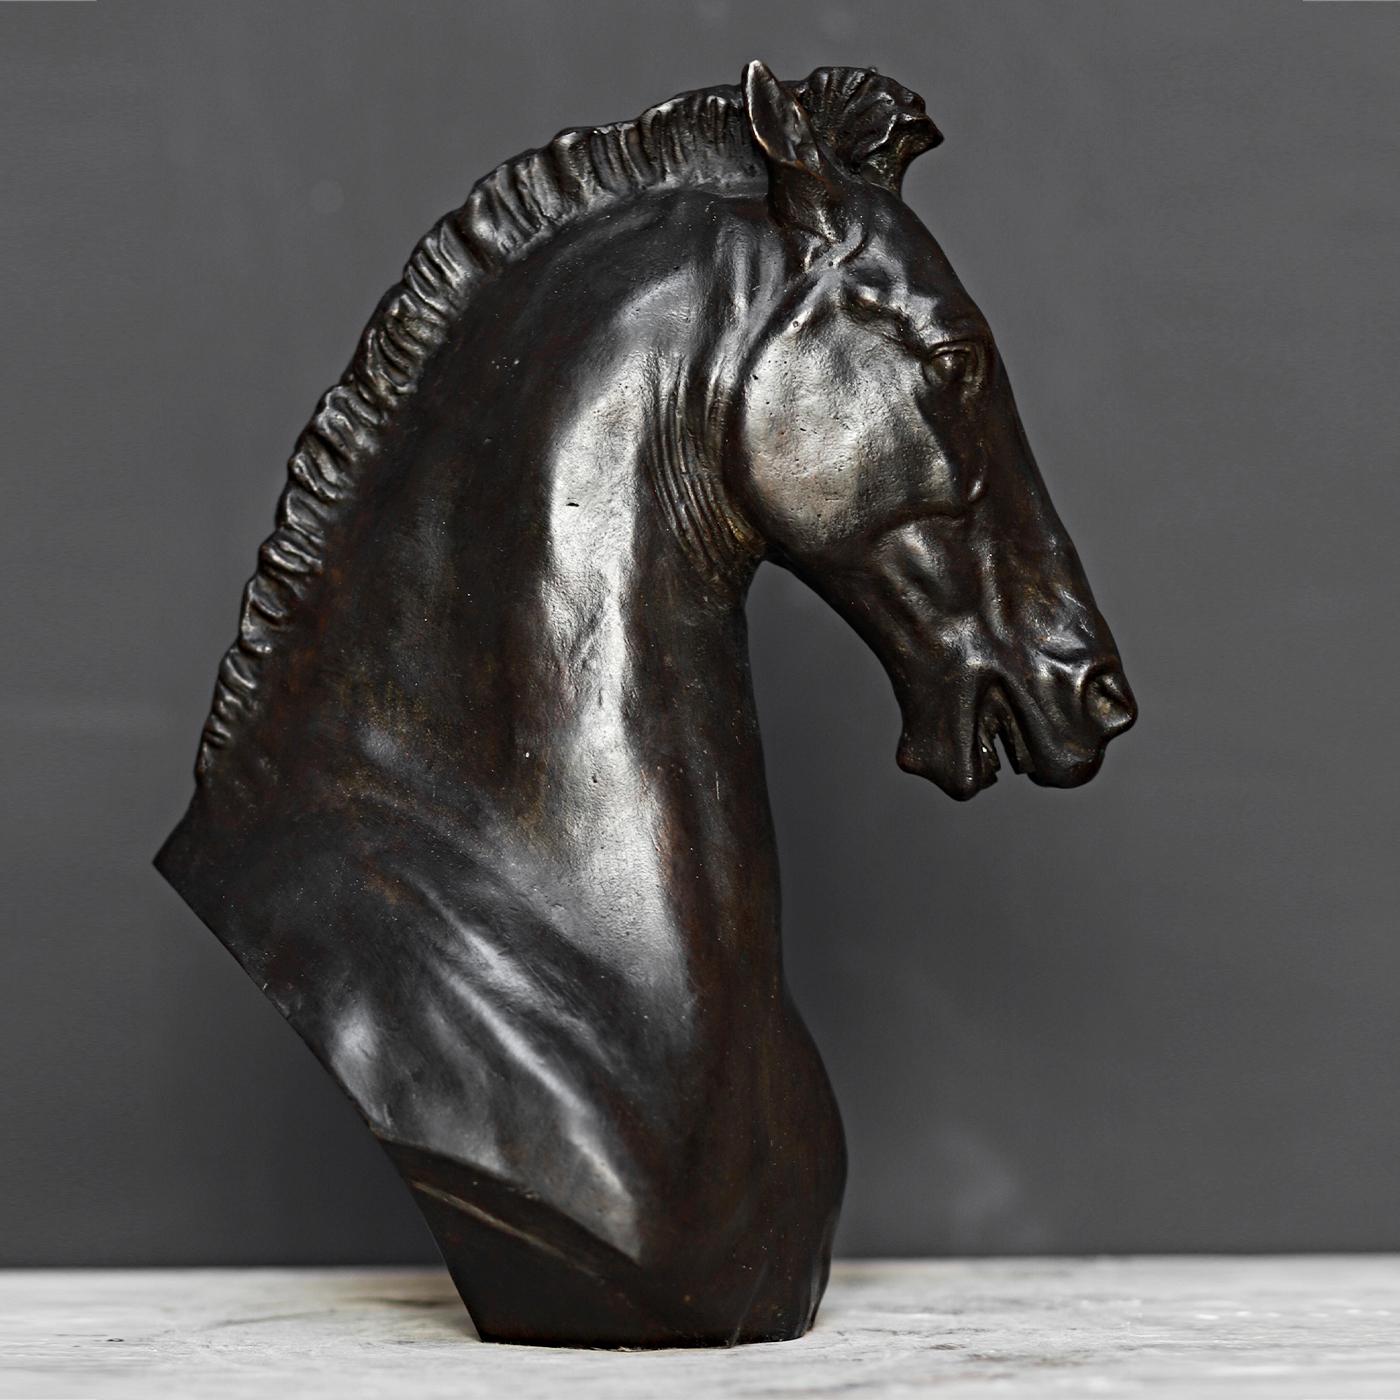 Symbole de force et d'énergie, cette sculpture de tête de cheval allie l'héritage ancien à une sensibilité moderne. Riche en détails, il présente une musculature et une crinière habilement sculptées, entièrement réalisées à la main en bronze avec la